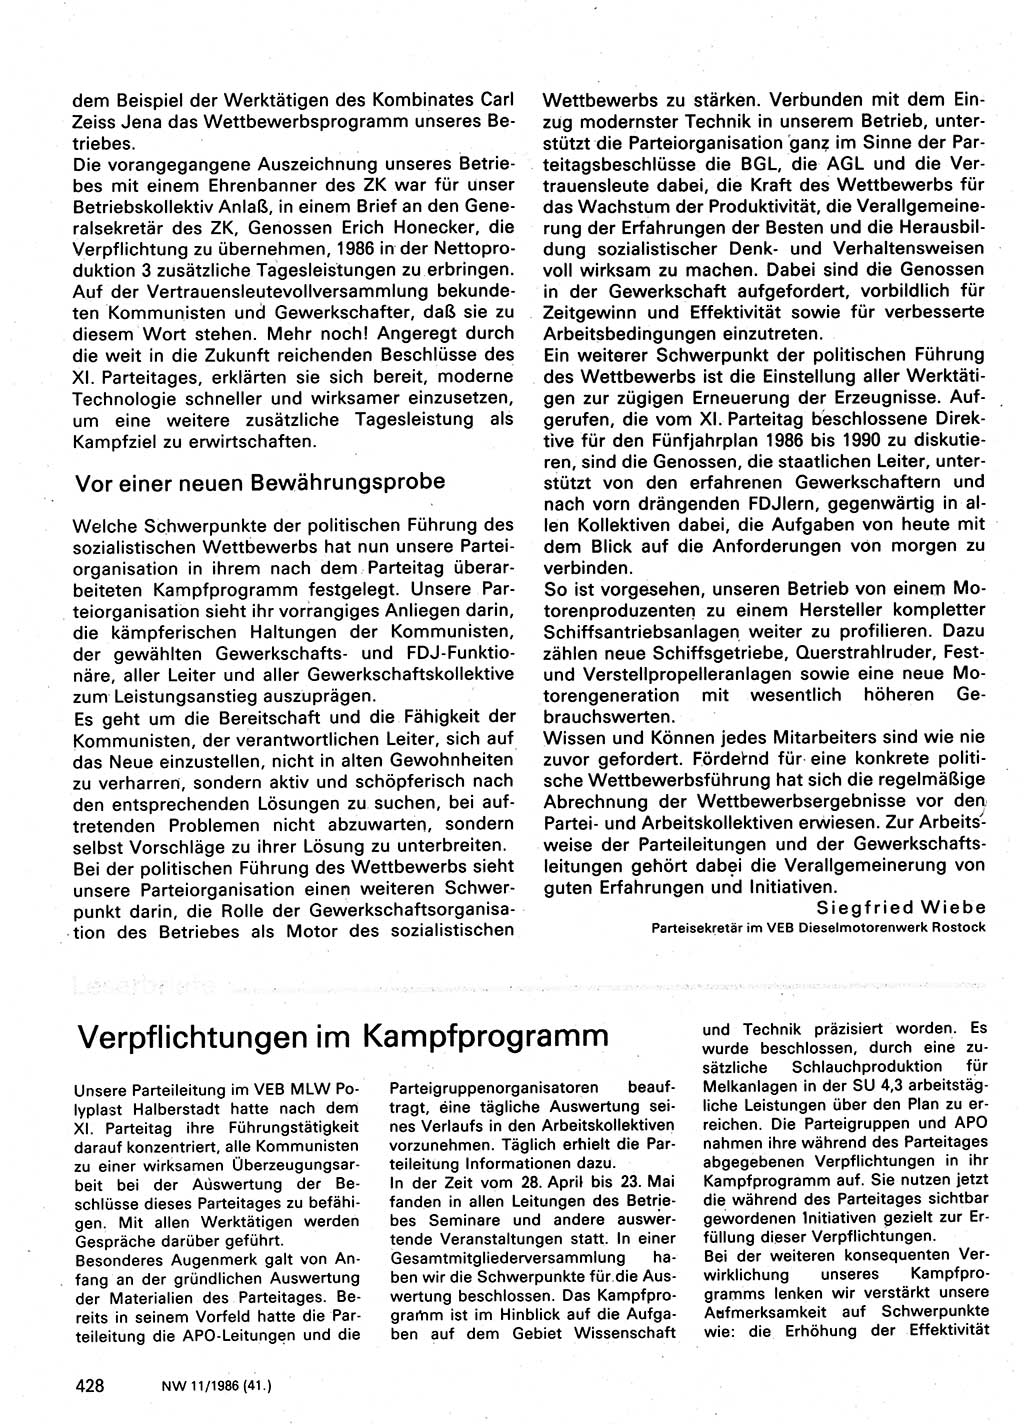 Neuer Weg (NW), Organ des Zentralkomitees (ZK) der SED (Sozialistische Einheitspartei Deutschlands) für Fragen des Parteilebens, 41. Jahrgang [Deutsche Demokratische Republik (DDR)] 1986, Seite 428 (NW ZK SED DDR 1986, S. 428)